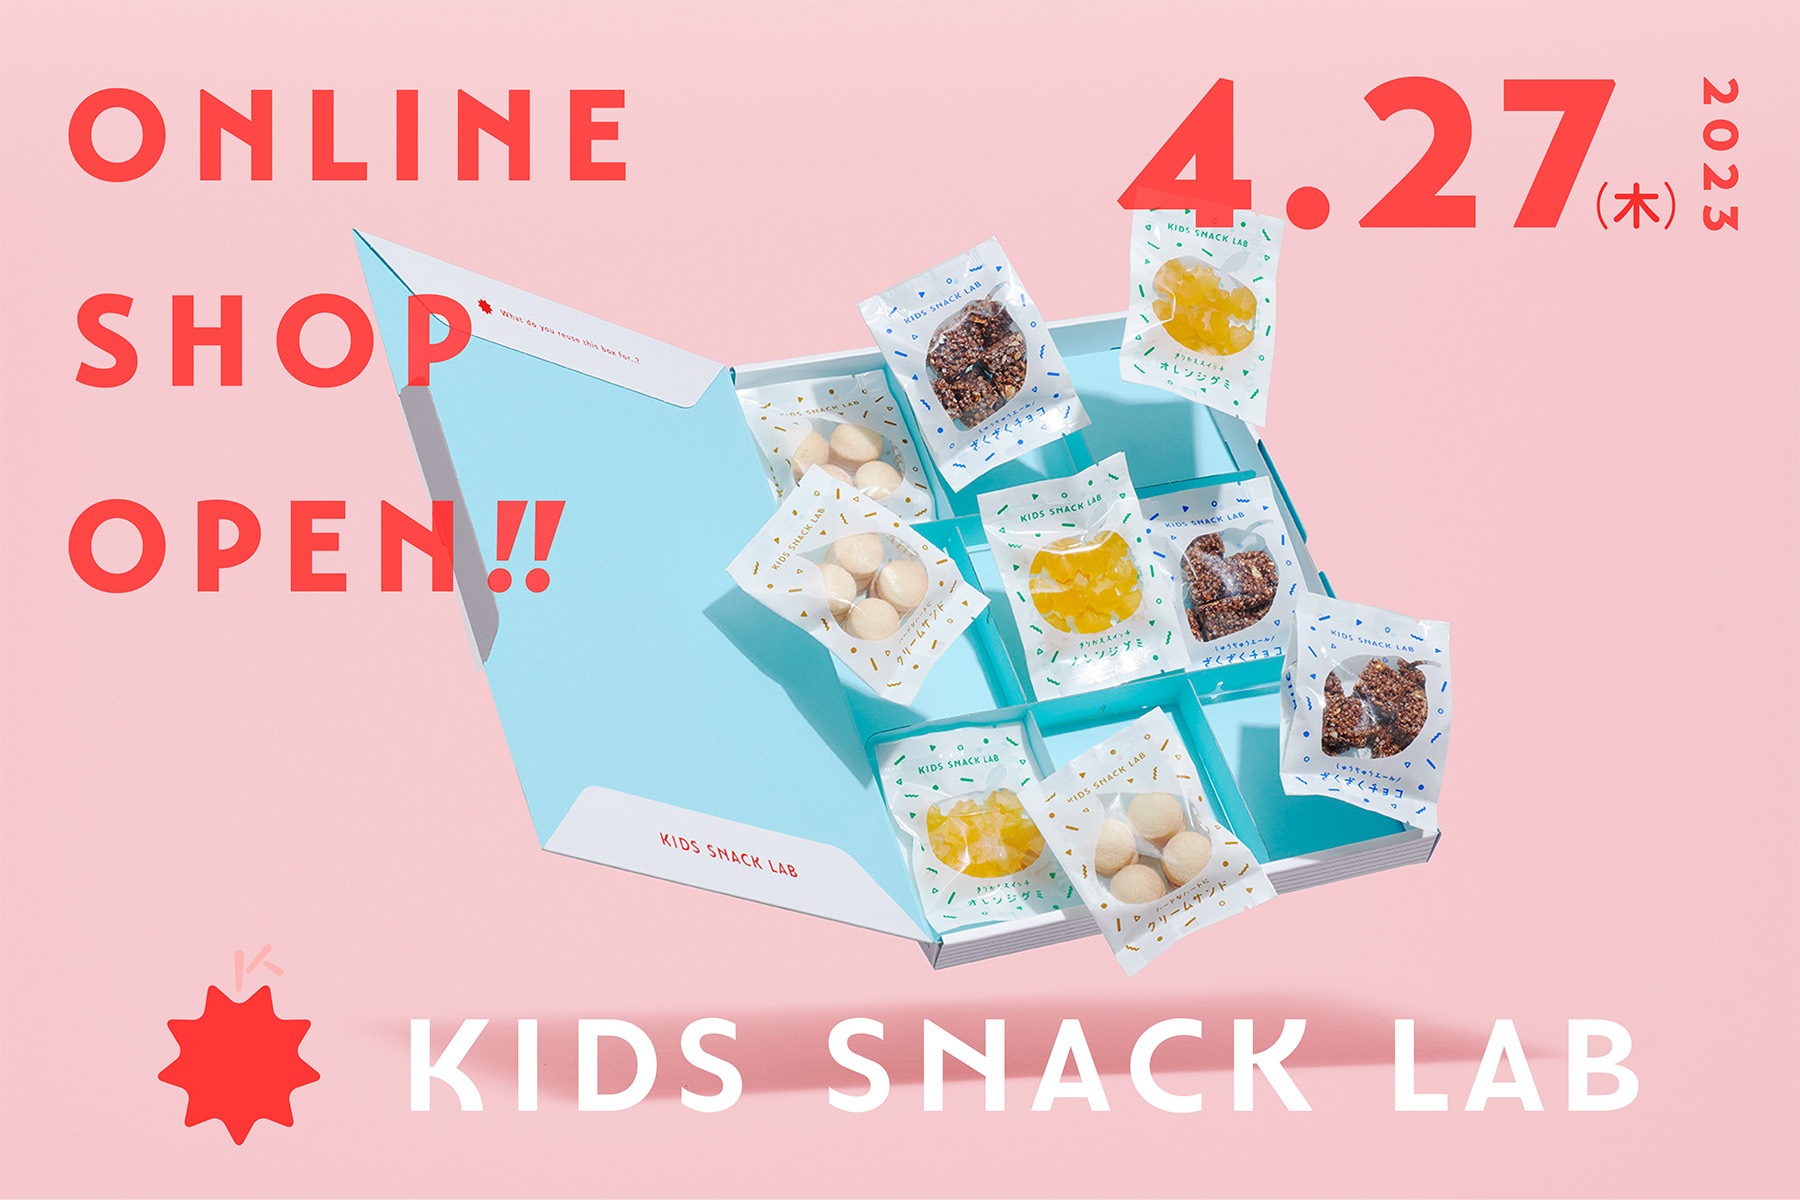 365日食べても体と心が喜ぶ！子どもの未来を育てる栄養機能お菓子のD2Cブランド「KIDS SNACK LAB」第一弾商品、公式サイトにて販売開始のサブ画像1